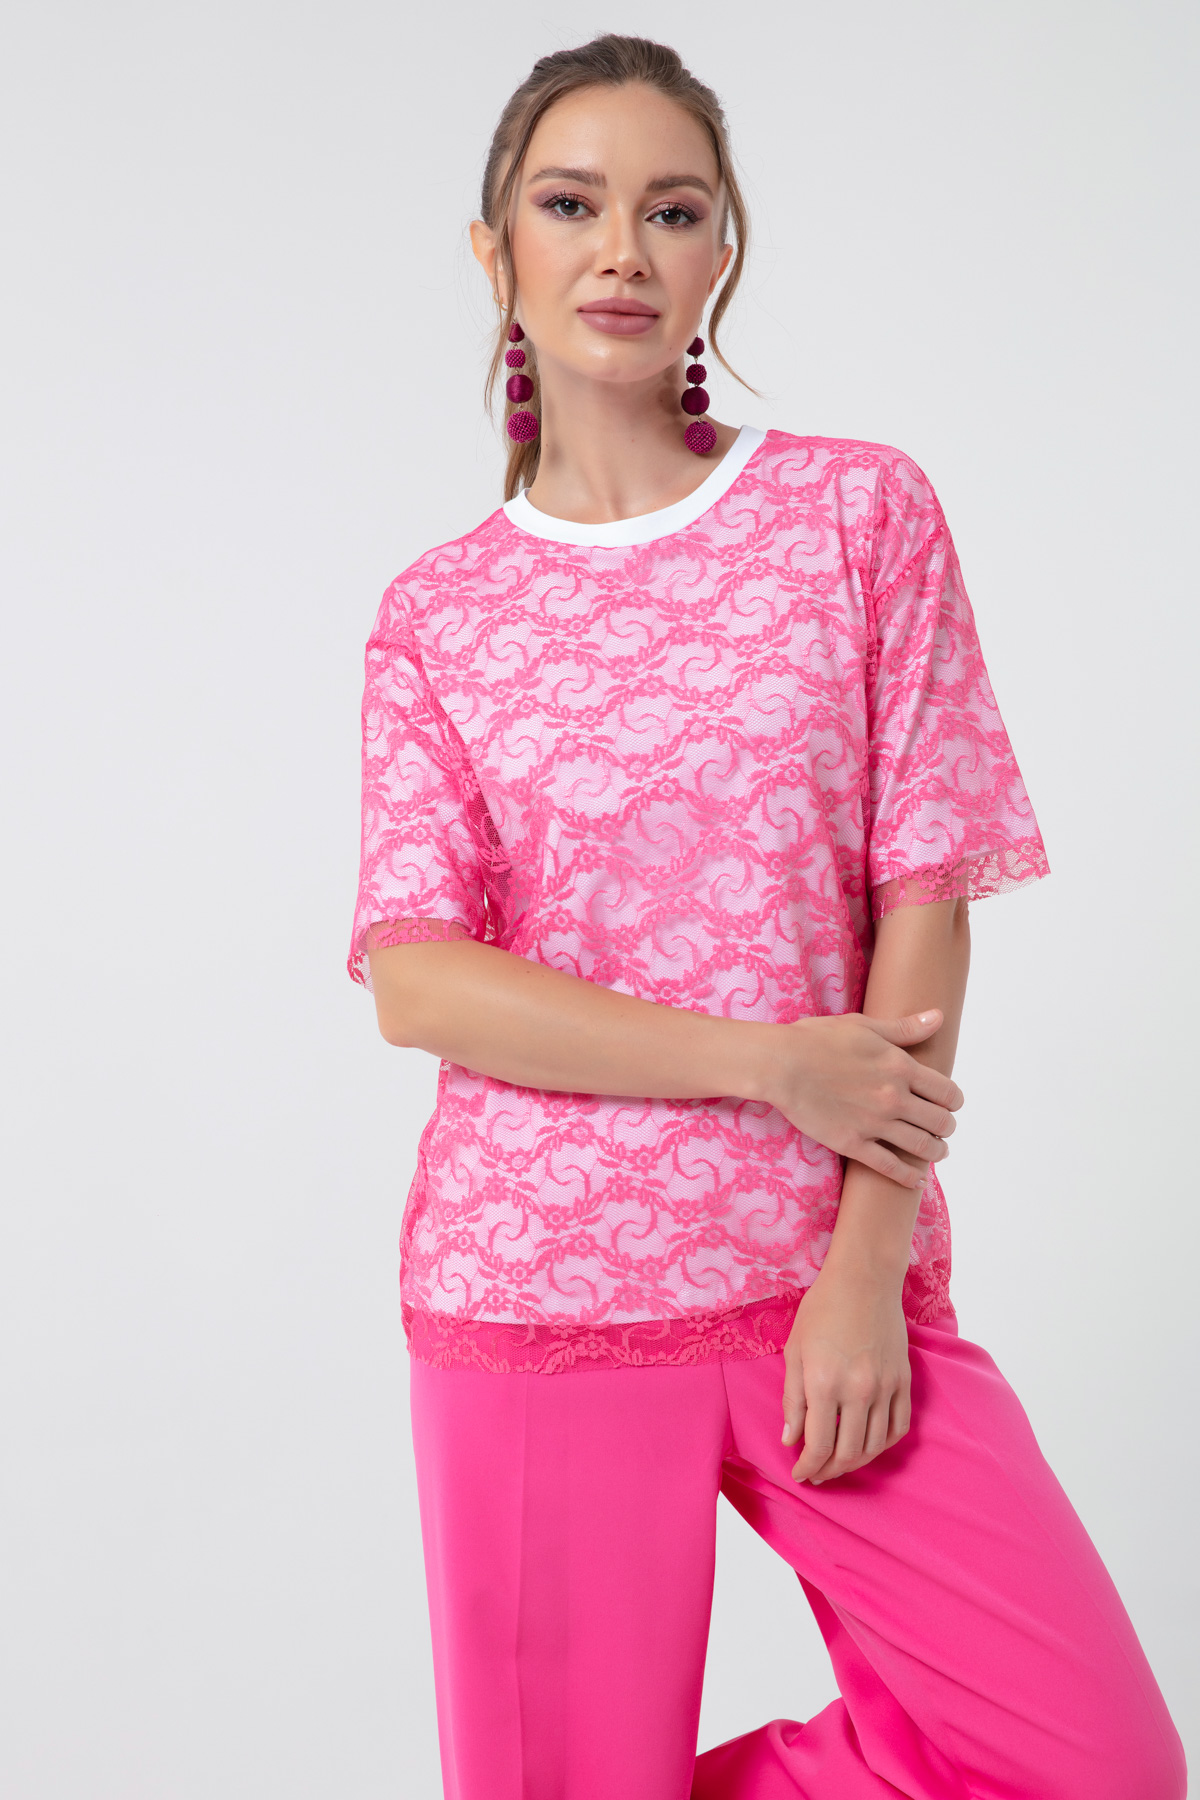 Women's Fuchsia Lace T-Shirt